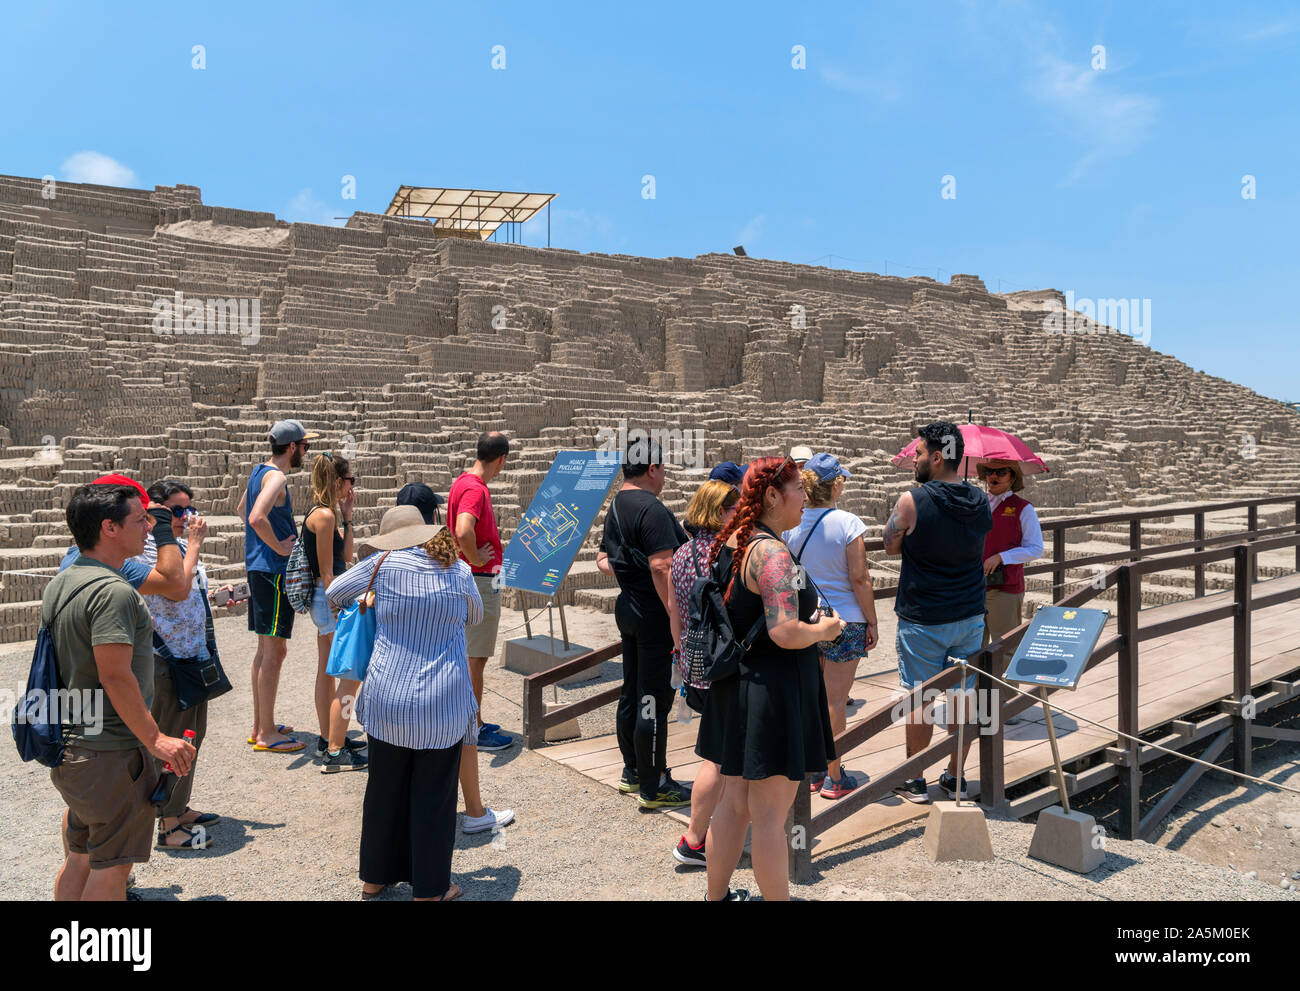 Huaca Pucllana, Lima. Les visiteurs dans une visite guidée des ruines de Huaca Pucllana, une pyramide d'adobe datant d'environ 400 AD, Miraflores, Lima, Pérou, de sorte Banque D'Images